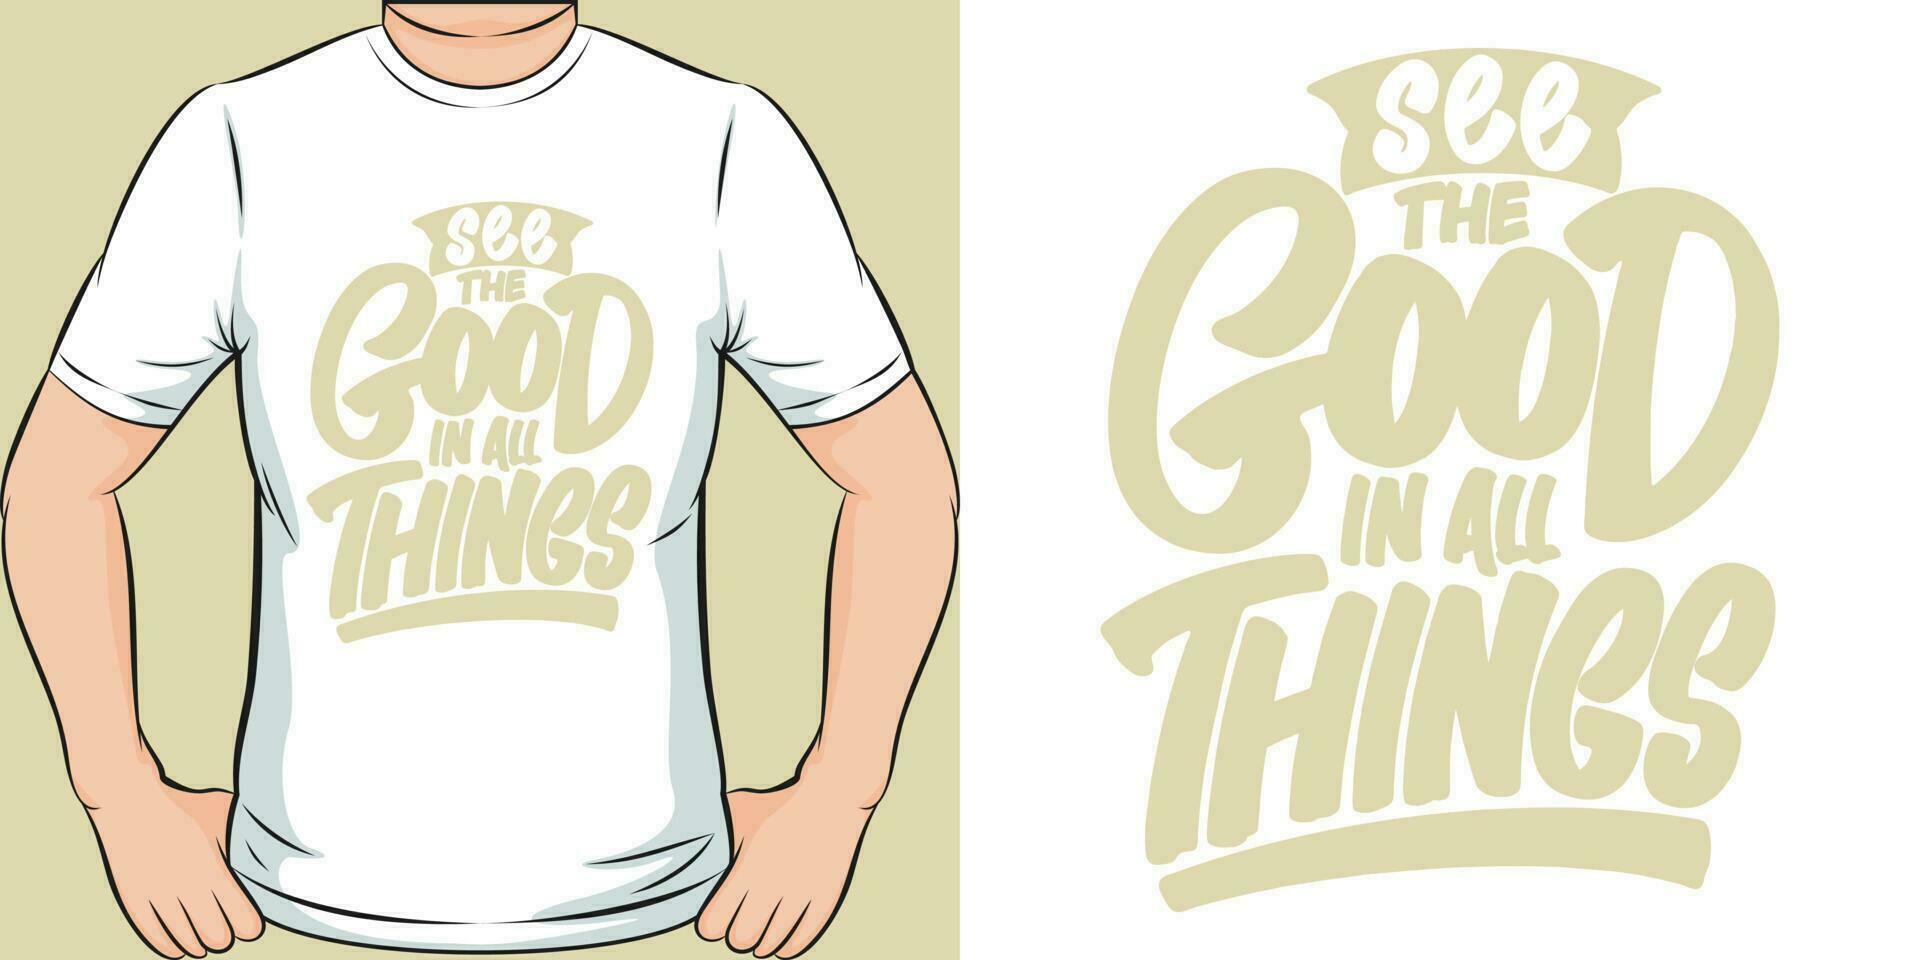 voir le bien dans tout choses, de motivation citation T-shirt conception. vecteur